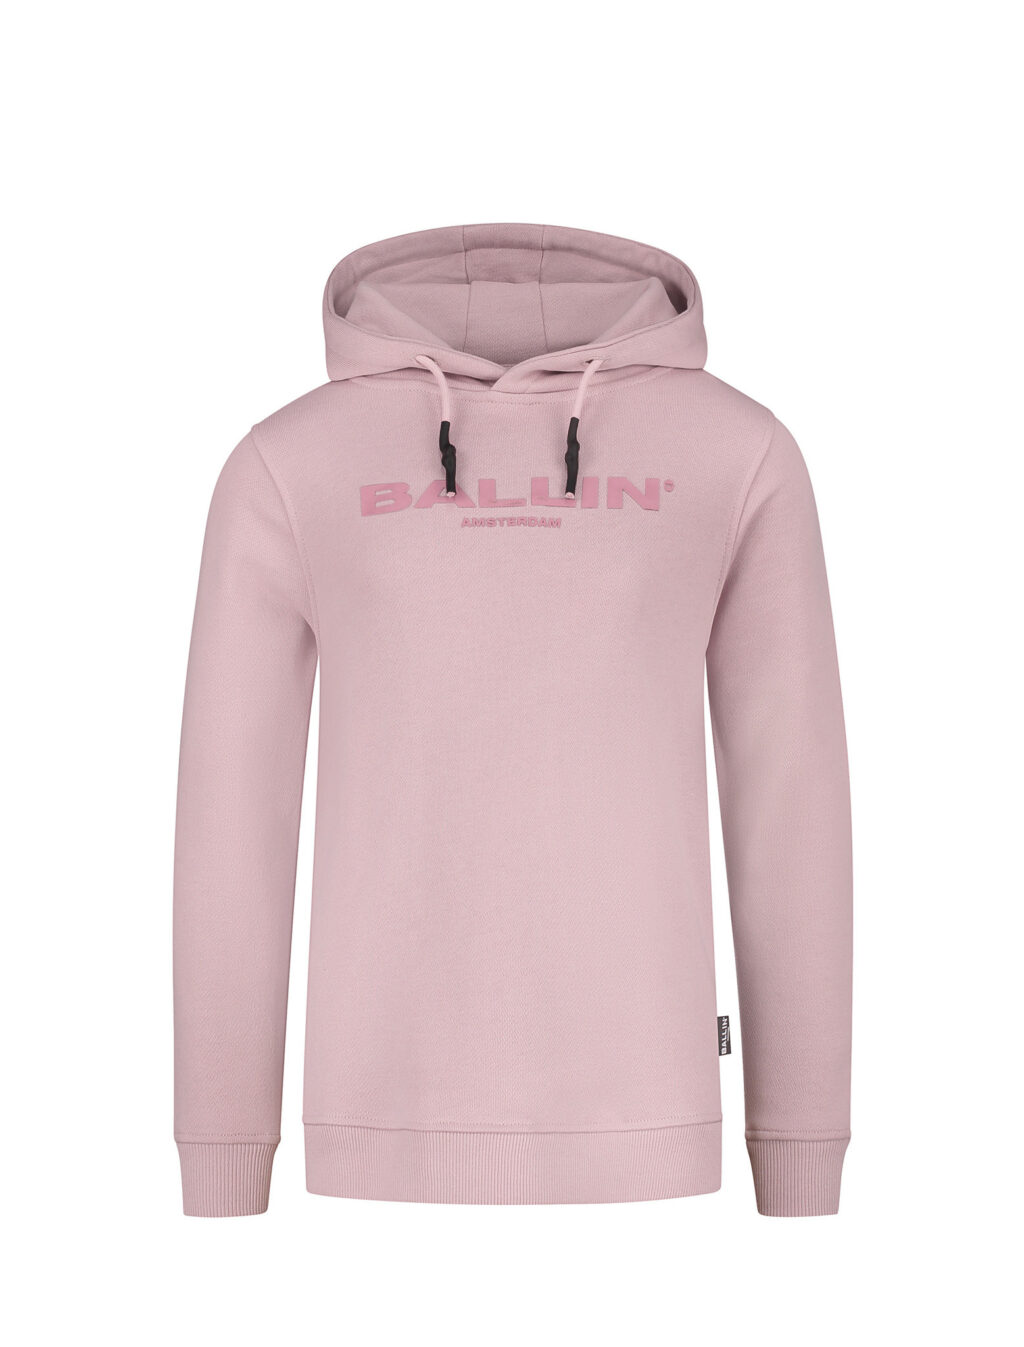 Ballin Jongens hoodie - Roze ~ Spinze.nl